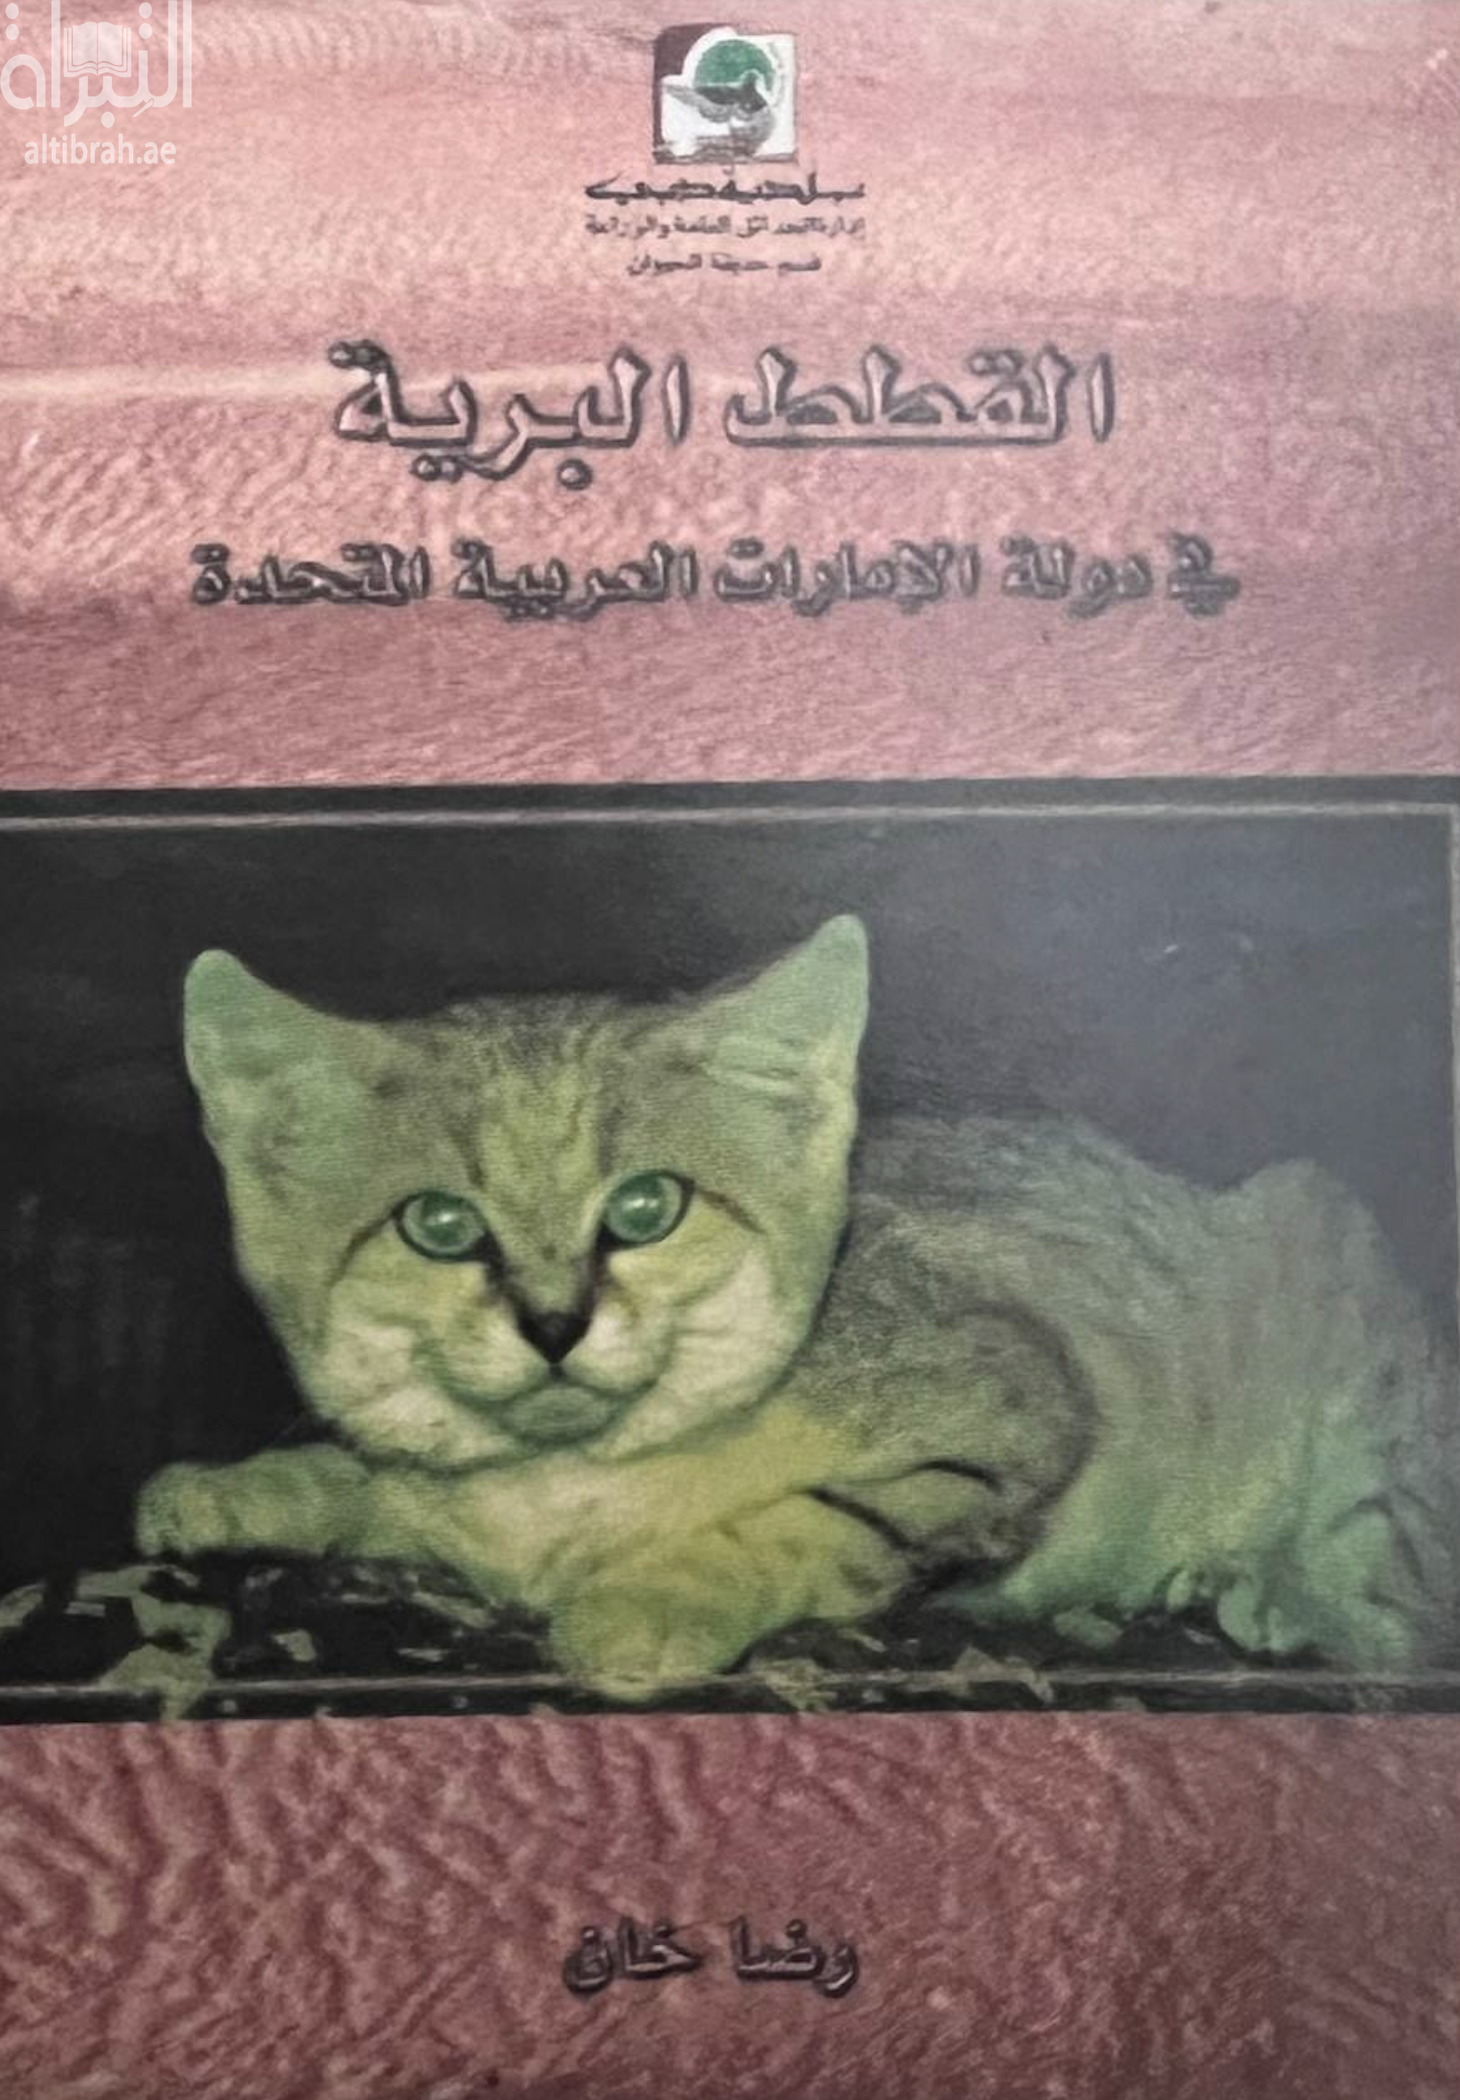 القطط البرية في دولة الإمارات العربية المتحدة